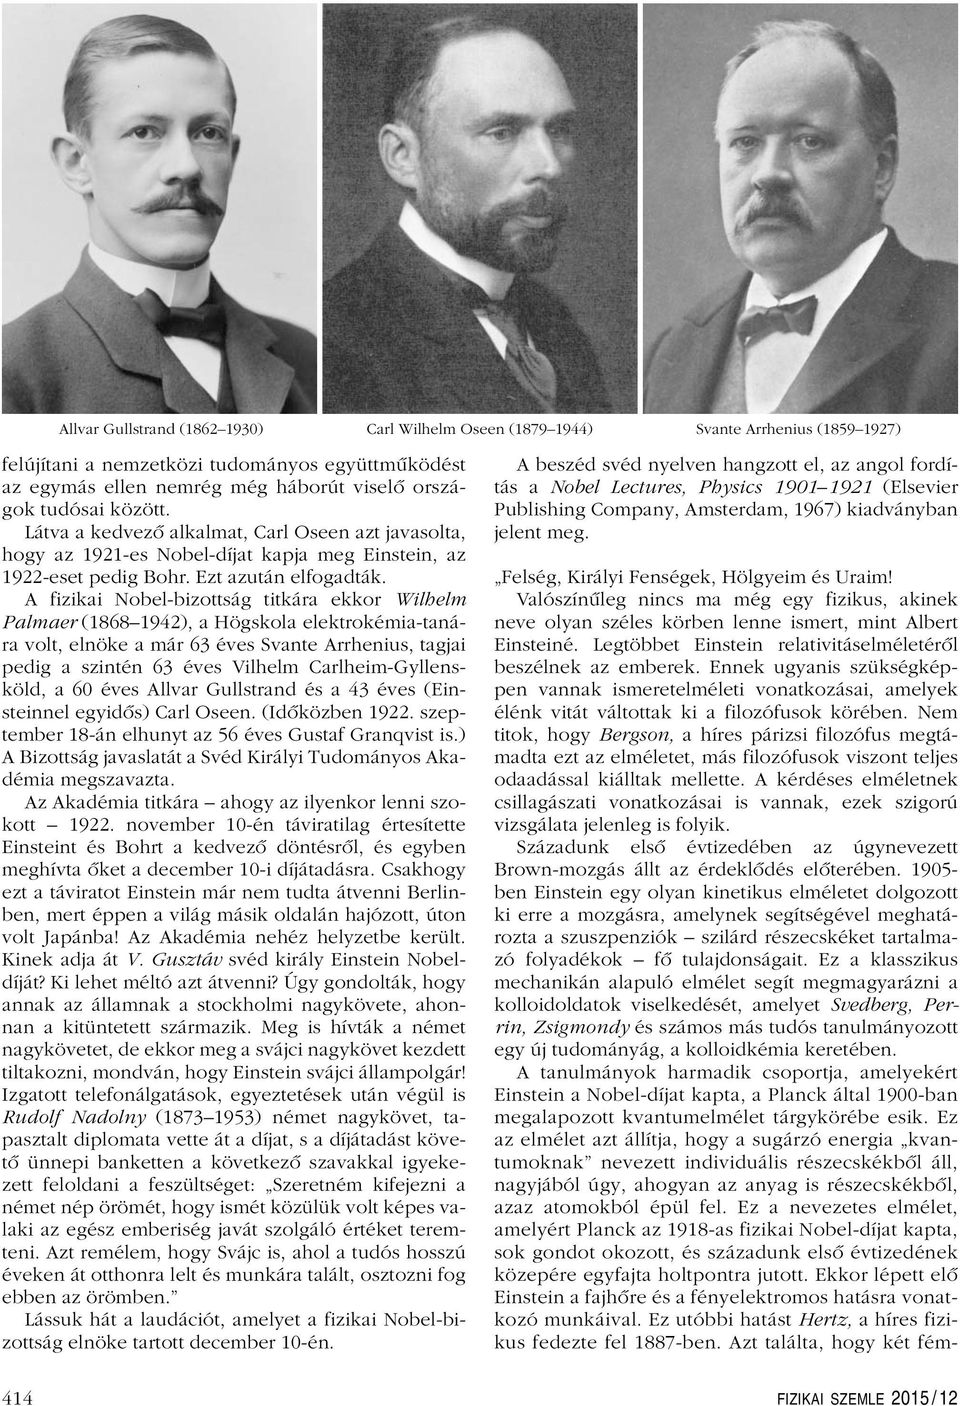 A fizikai Nobel-bizottság titkára ekkor Wilhelm Palmaer (1868 1942), a Högskola elektrokémia-tanára volt, elnöke a már 63 éves Svante Arrhenius, tagjai pedig a szintén 63 éves Vilhelm